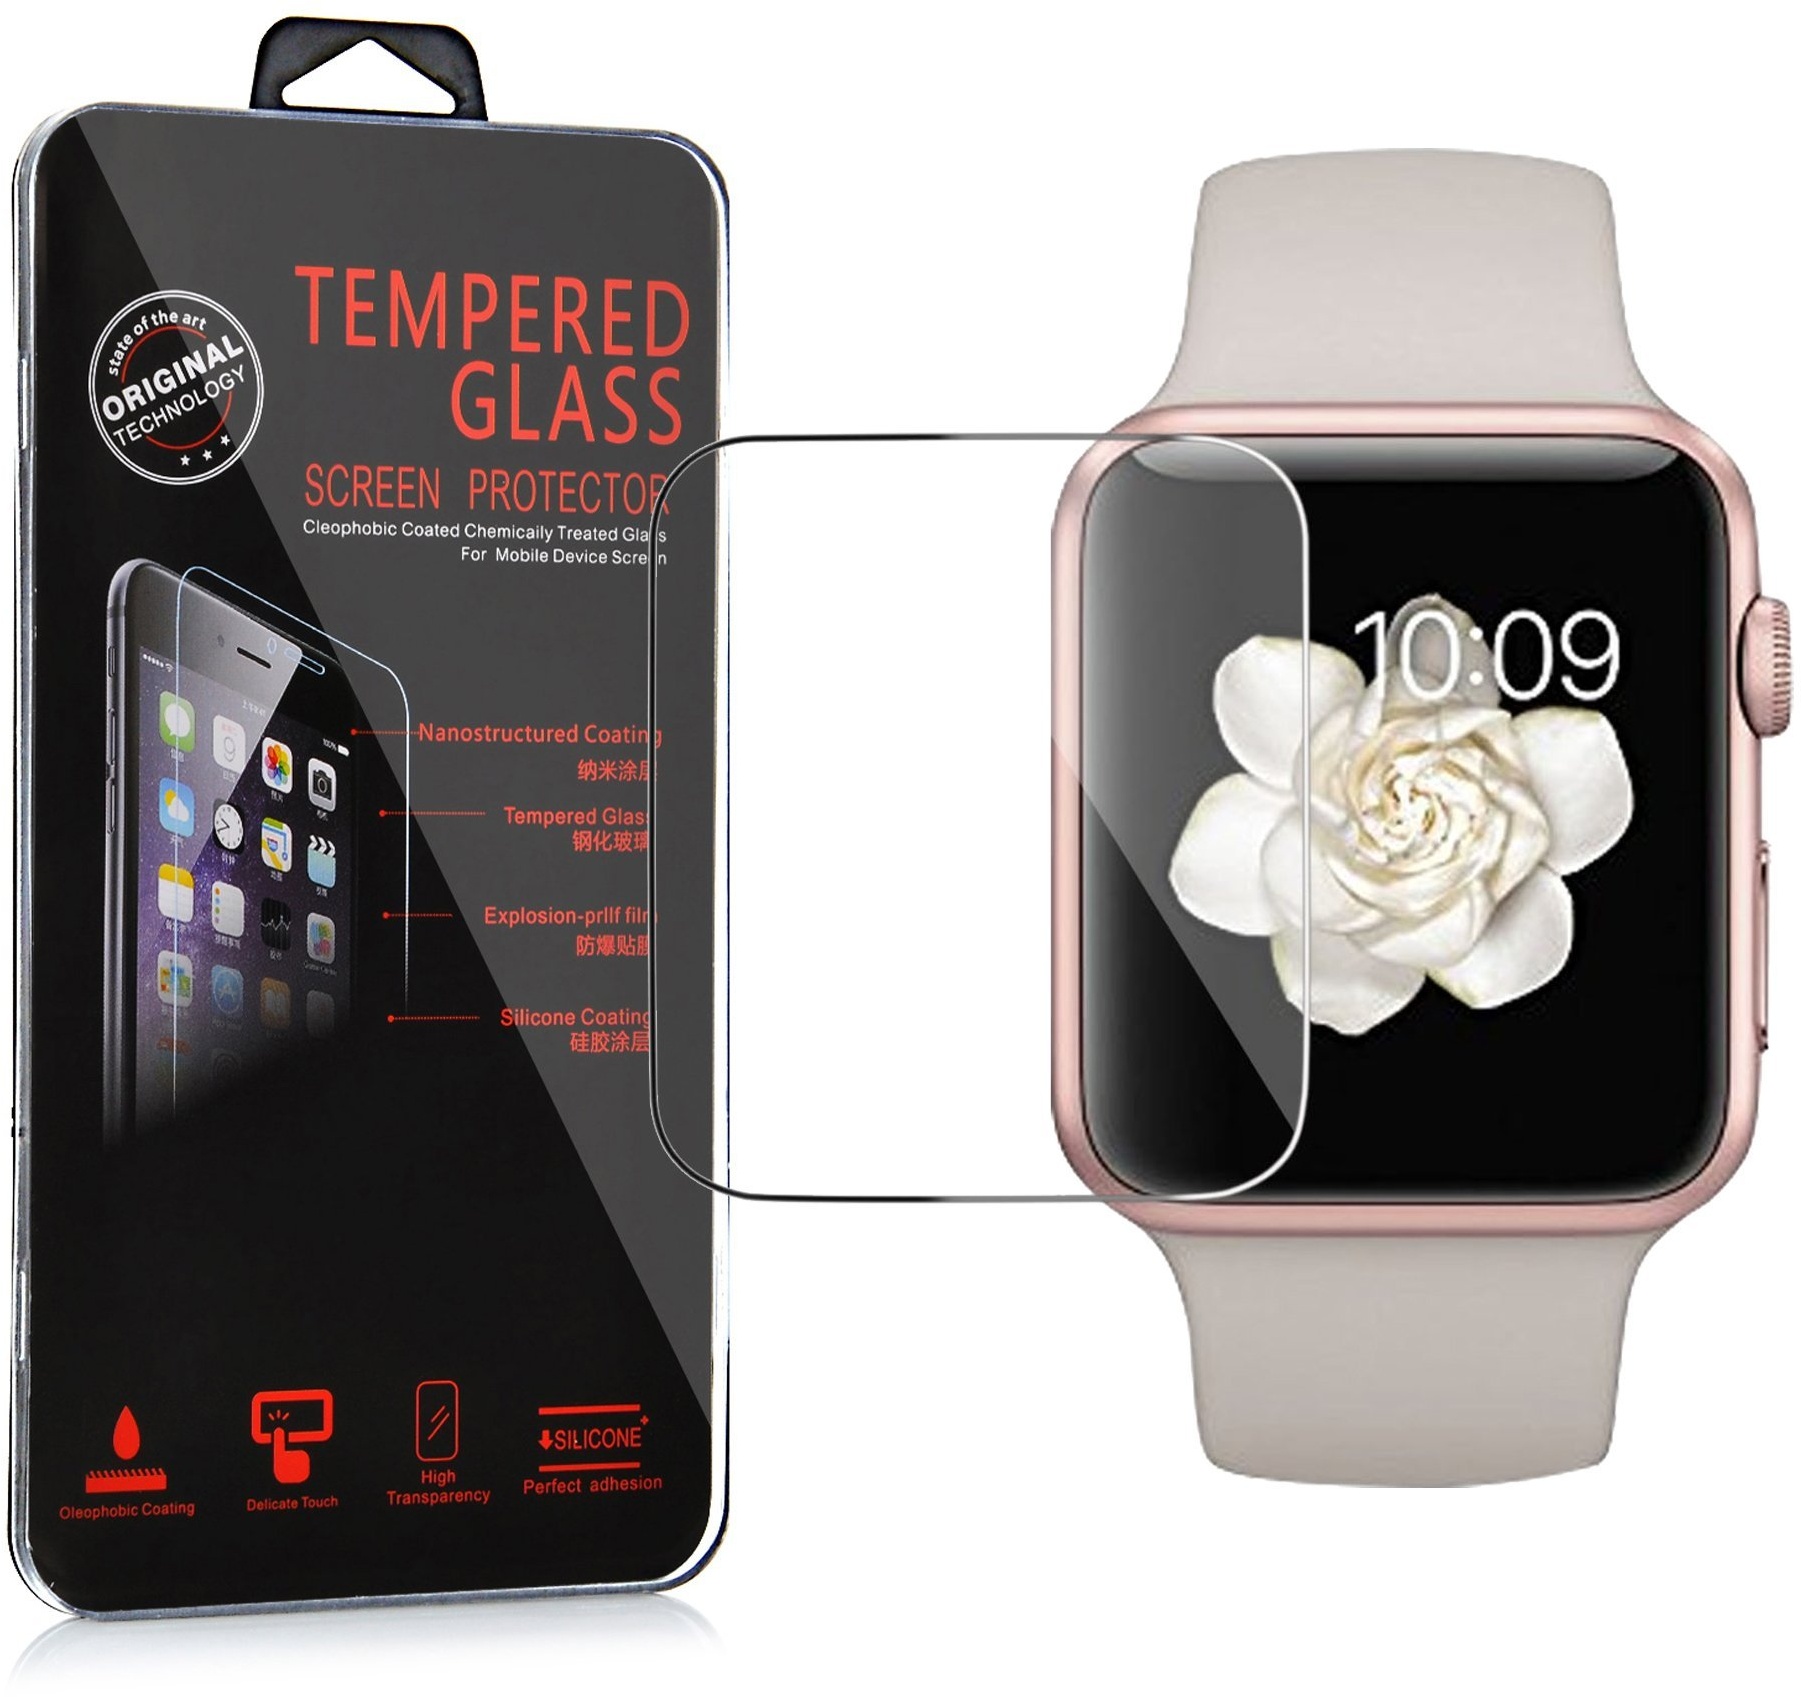 Cadorabo Apple Watch Series 1 & 2 42mm Panzerglasfolie Display-Schutz Schutz-Folie 3D Touch Kompatibel in 9H Härte gehärtetes (Tempered) Schutz-Glas in KRISTALL-KLAR